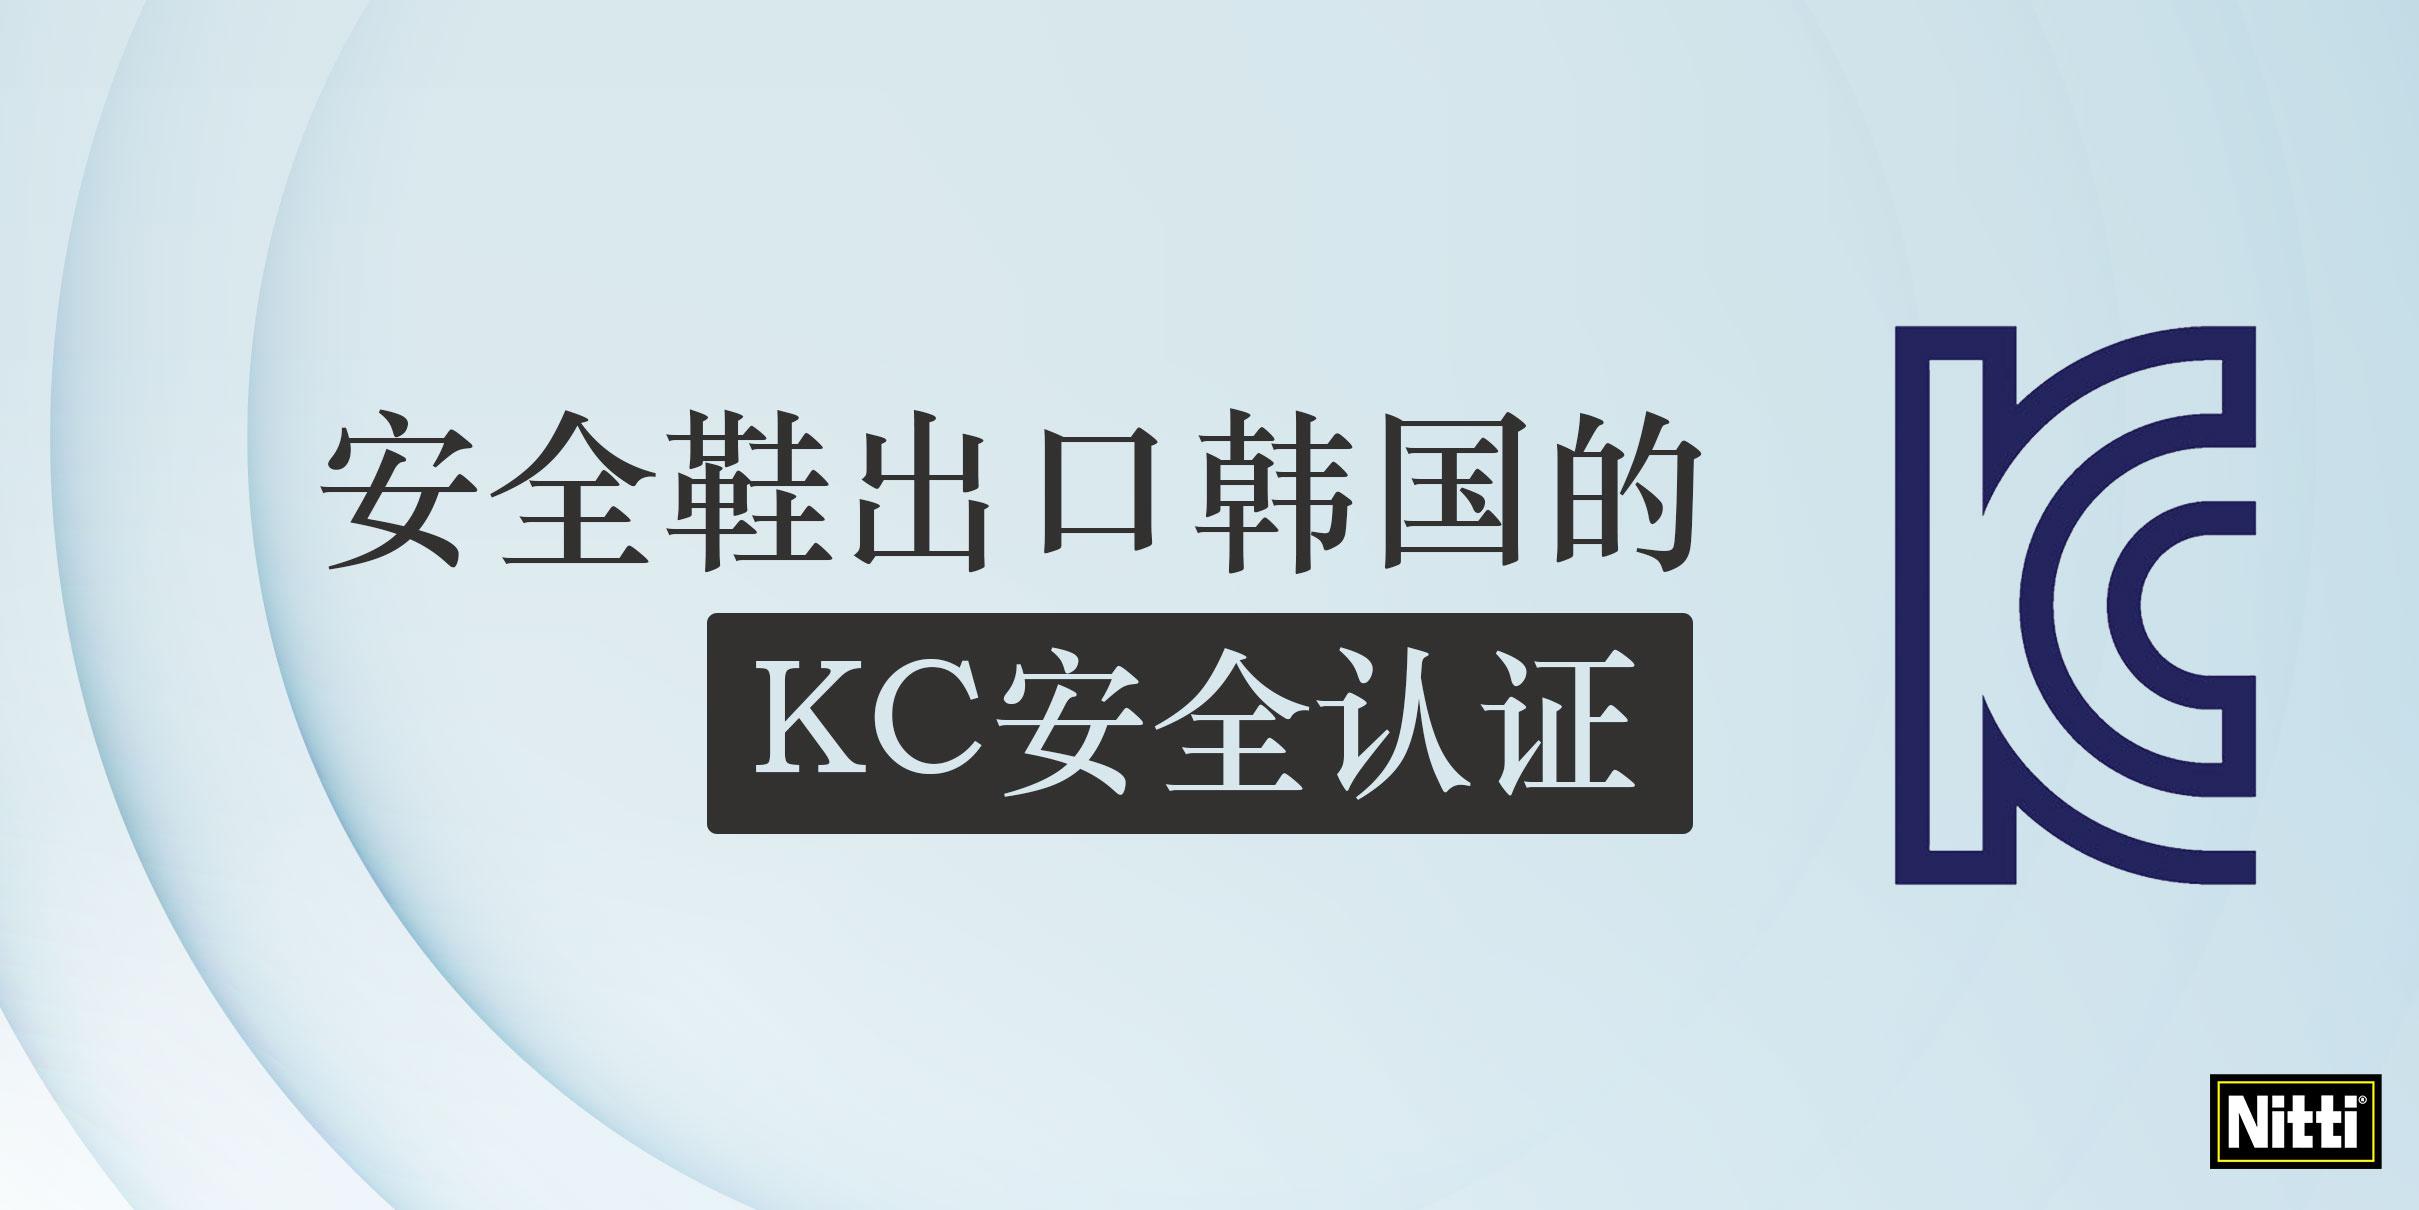 安全鞋出口韩国的KC安全认证